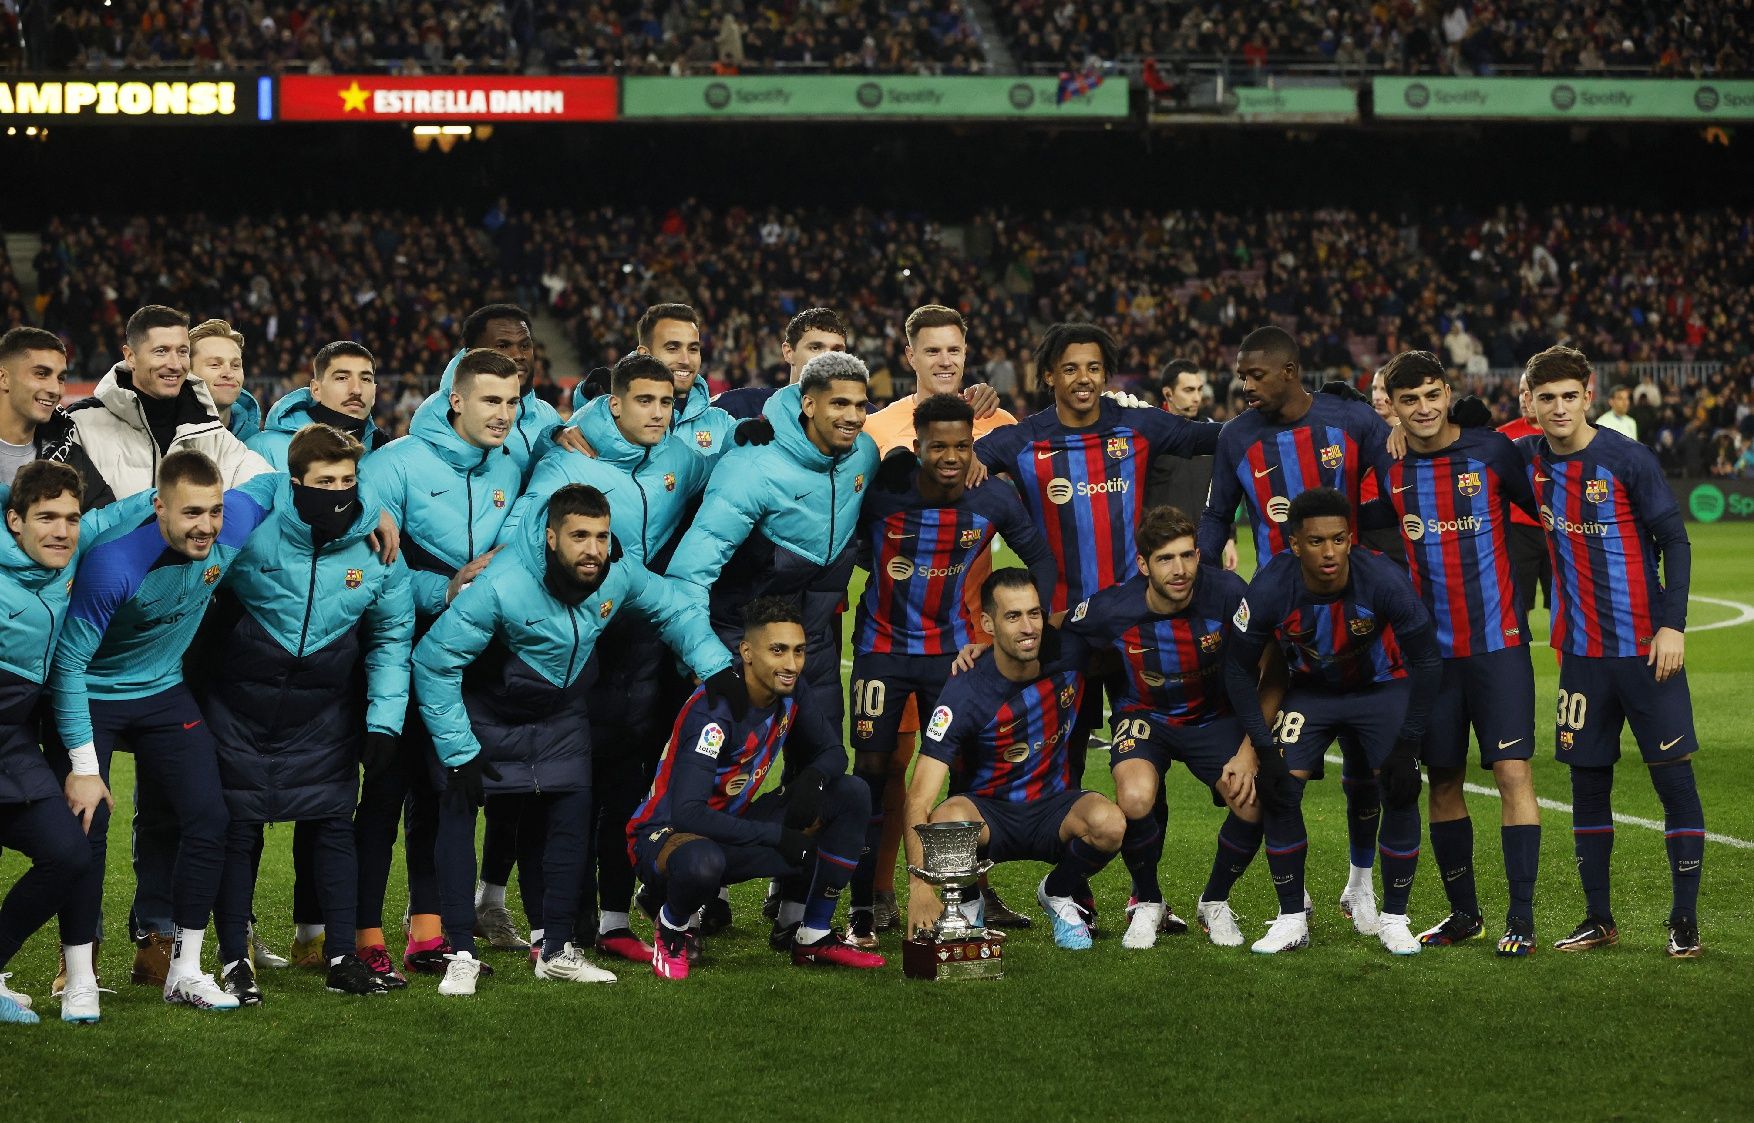 Les millors imatges del partit del Barça - Getafe